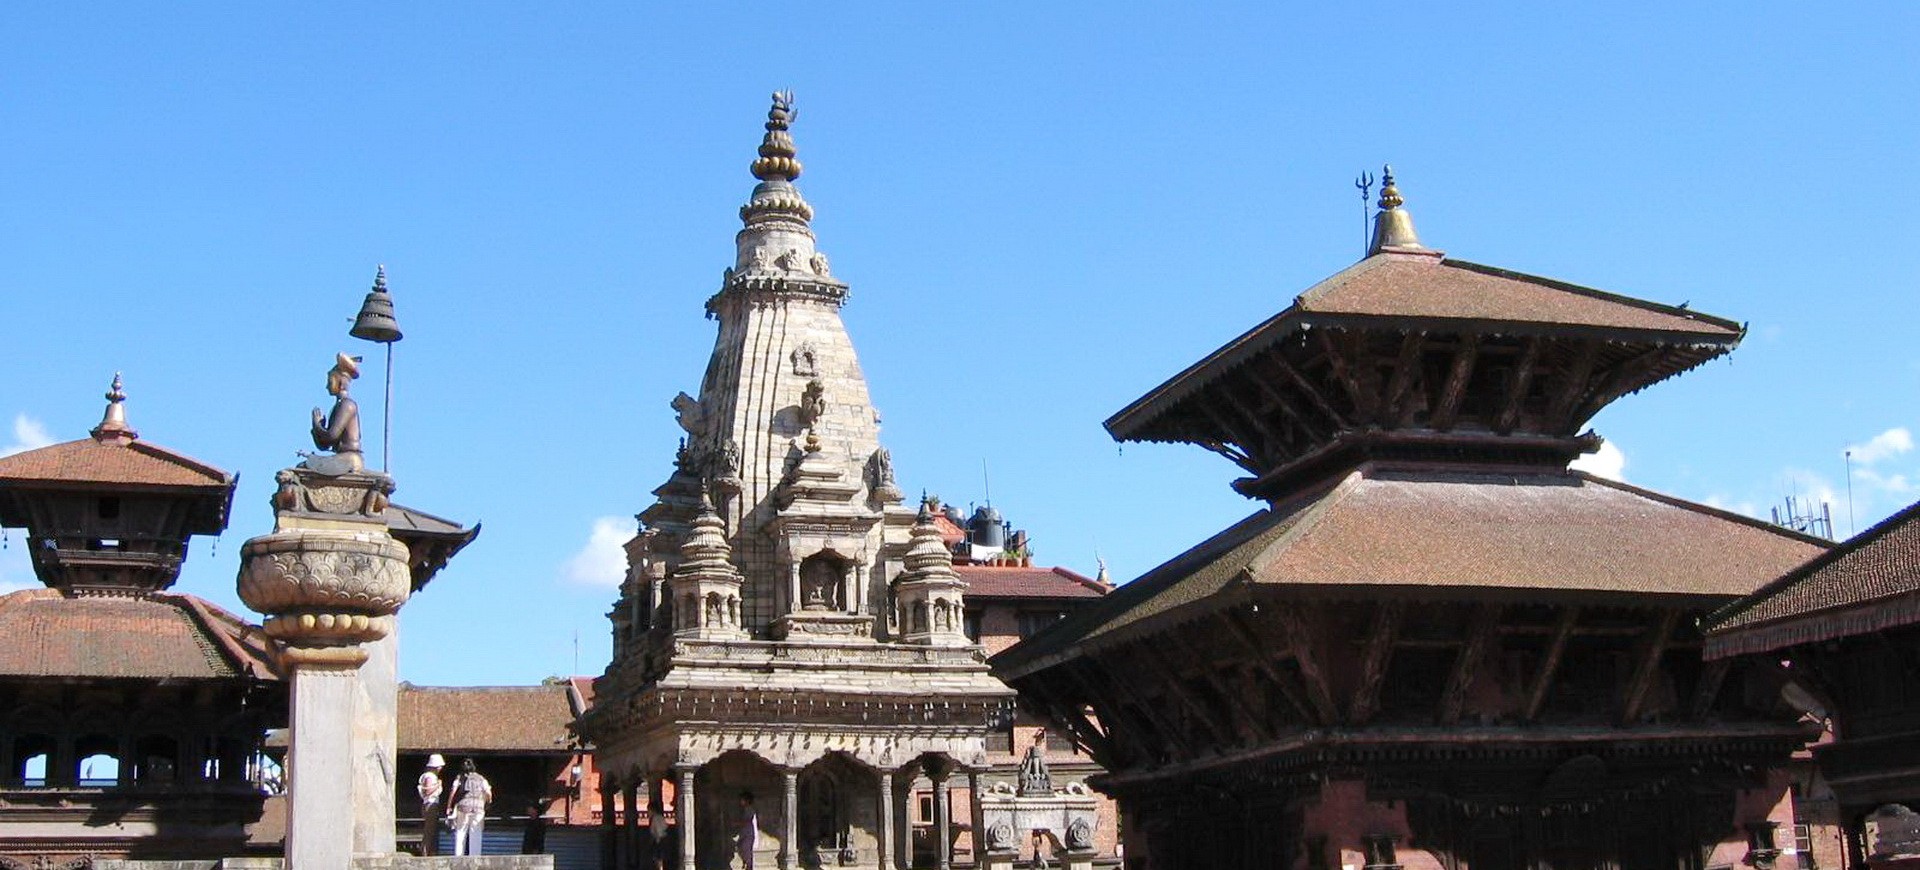 Népal Kathmandou Bhaktapur ou Bodhnath Dubar Square